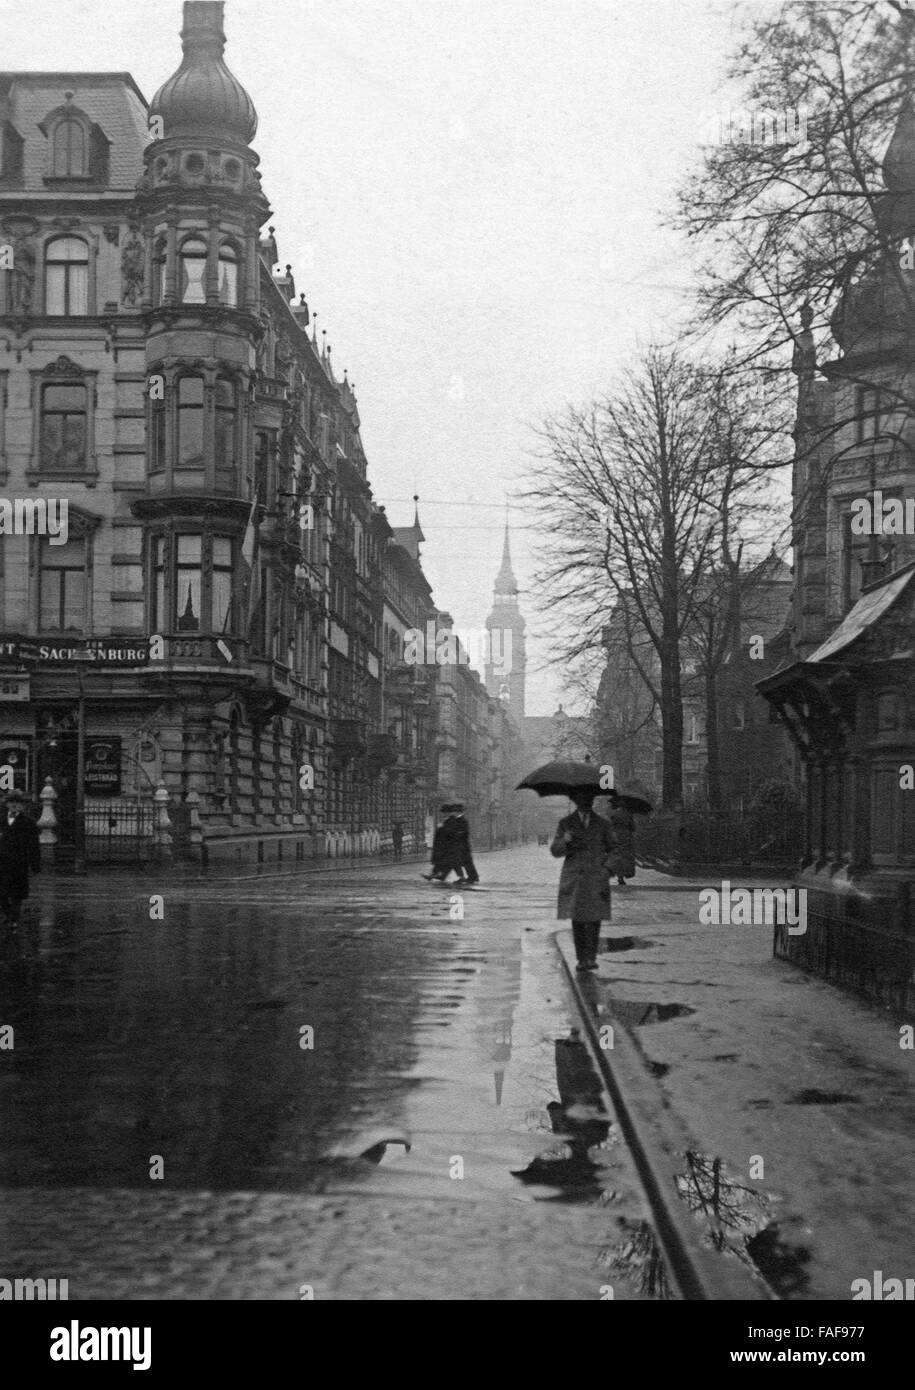 Die Ecke Sachsenring und Metzerstraße in Köln während eines Regenschauers, Deutschland 1920er Jahre. The corner of Sachsenring and Metzerstrasse street at Cologne during a rain shower, Germany 1920s. Stock Photo